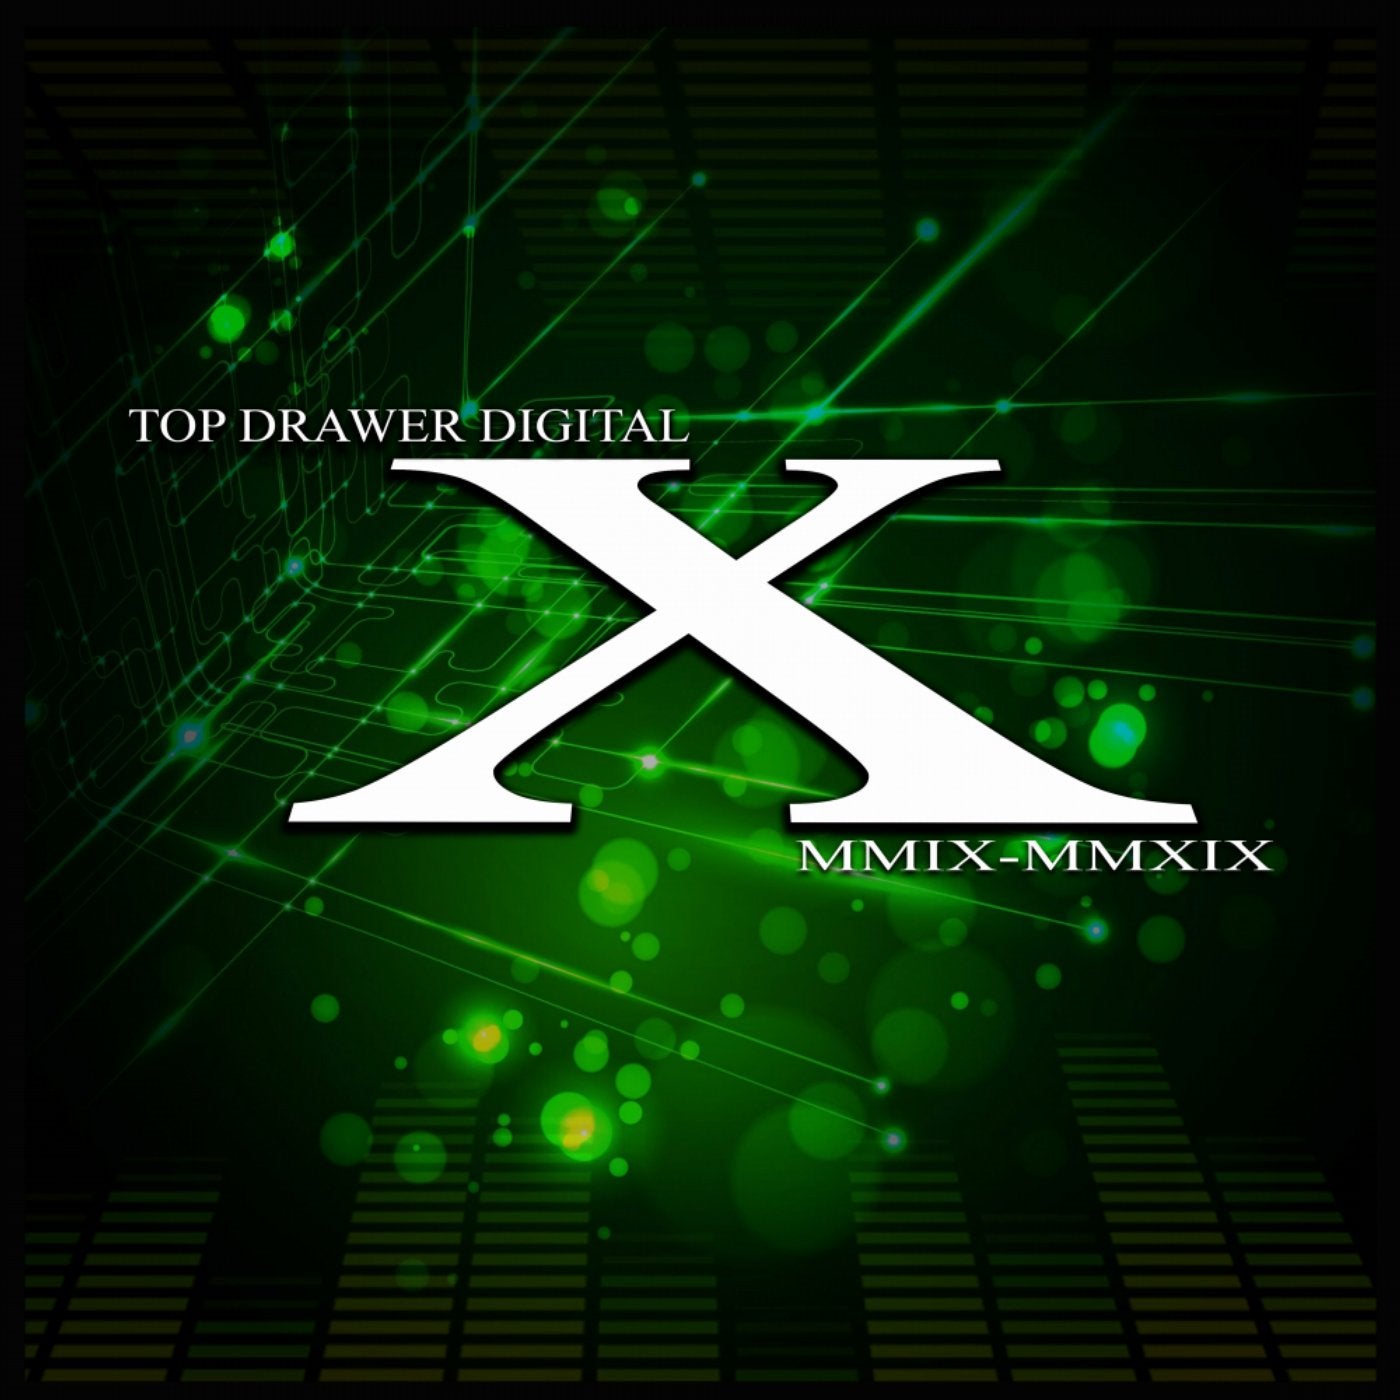 Top Drawer Digital X  (MMIX: MMXIX)